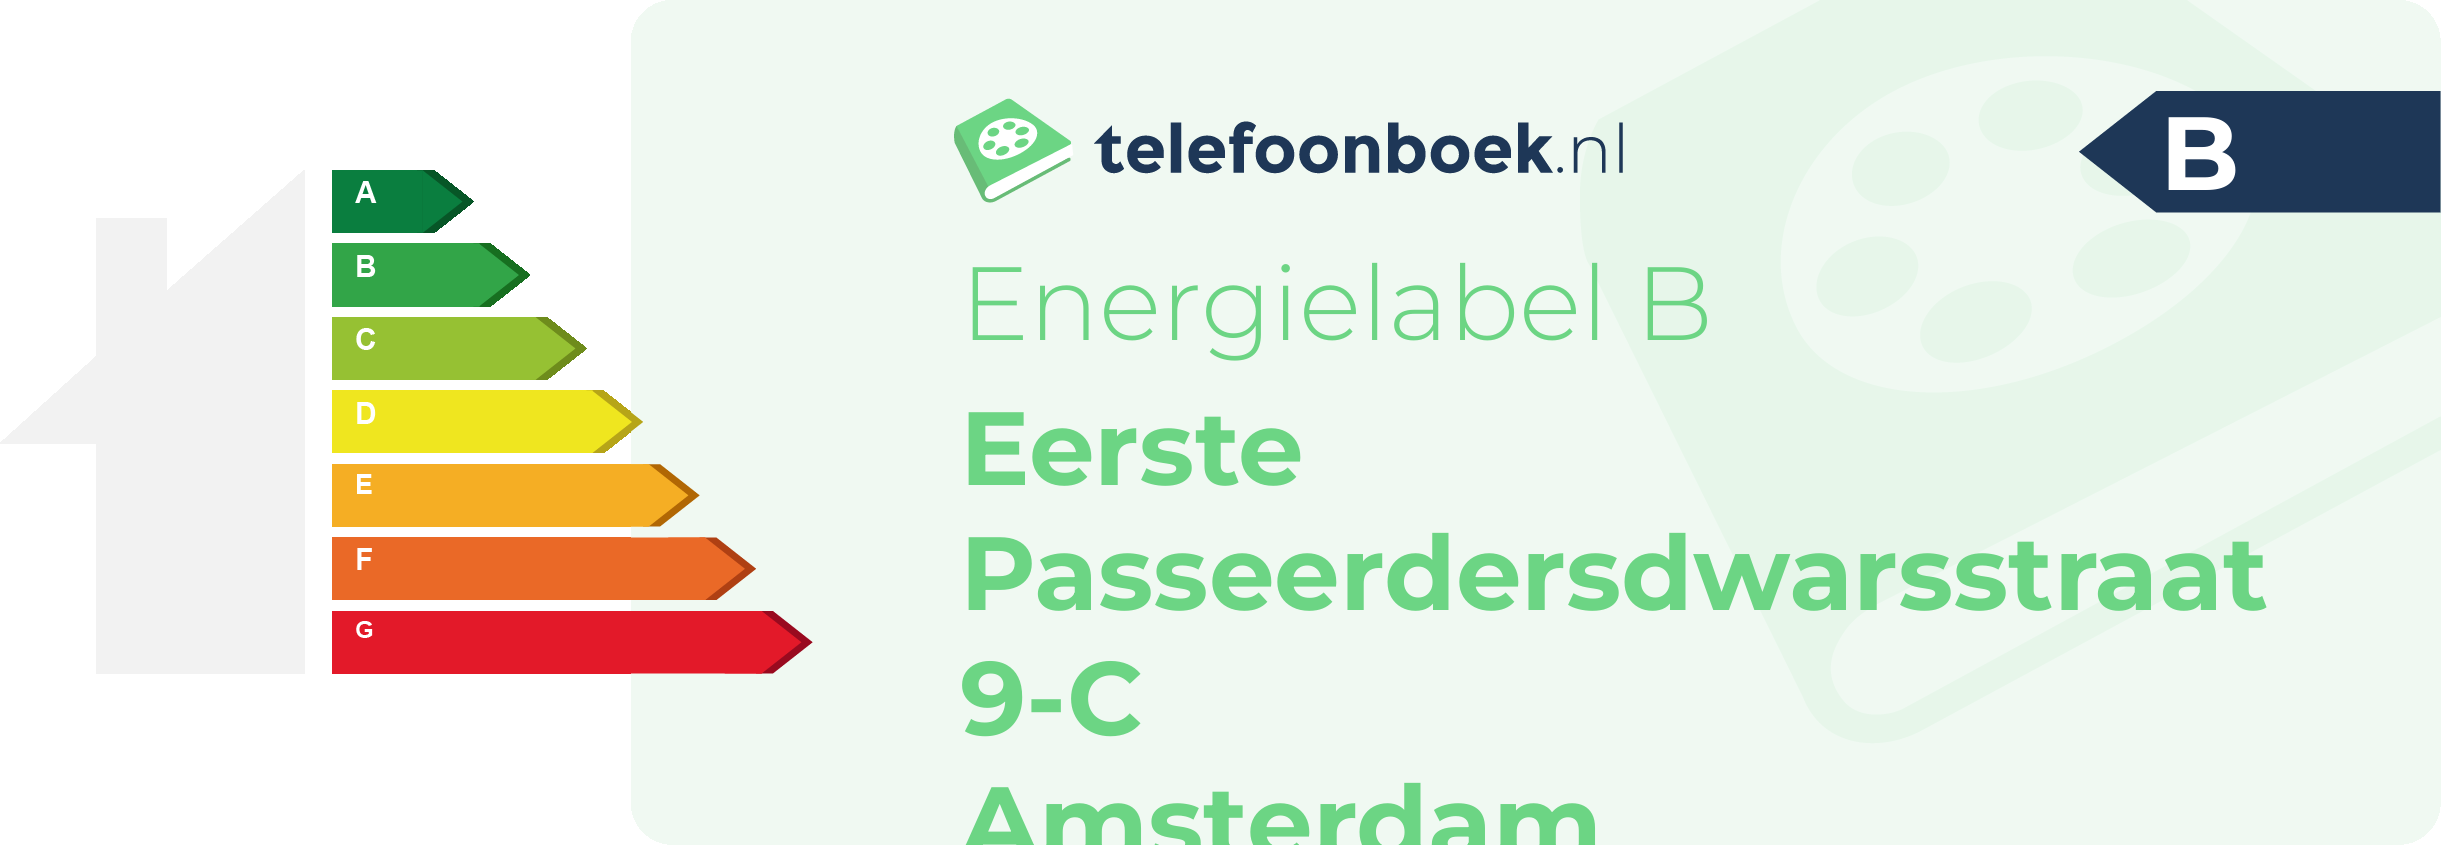 Energielabel Eerste Passeerdersdwarsstraat 9-C Amsterdam